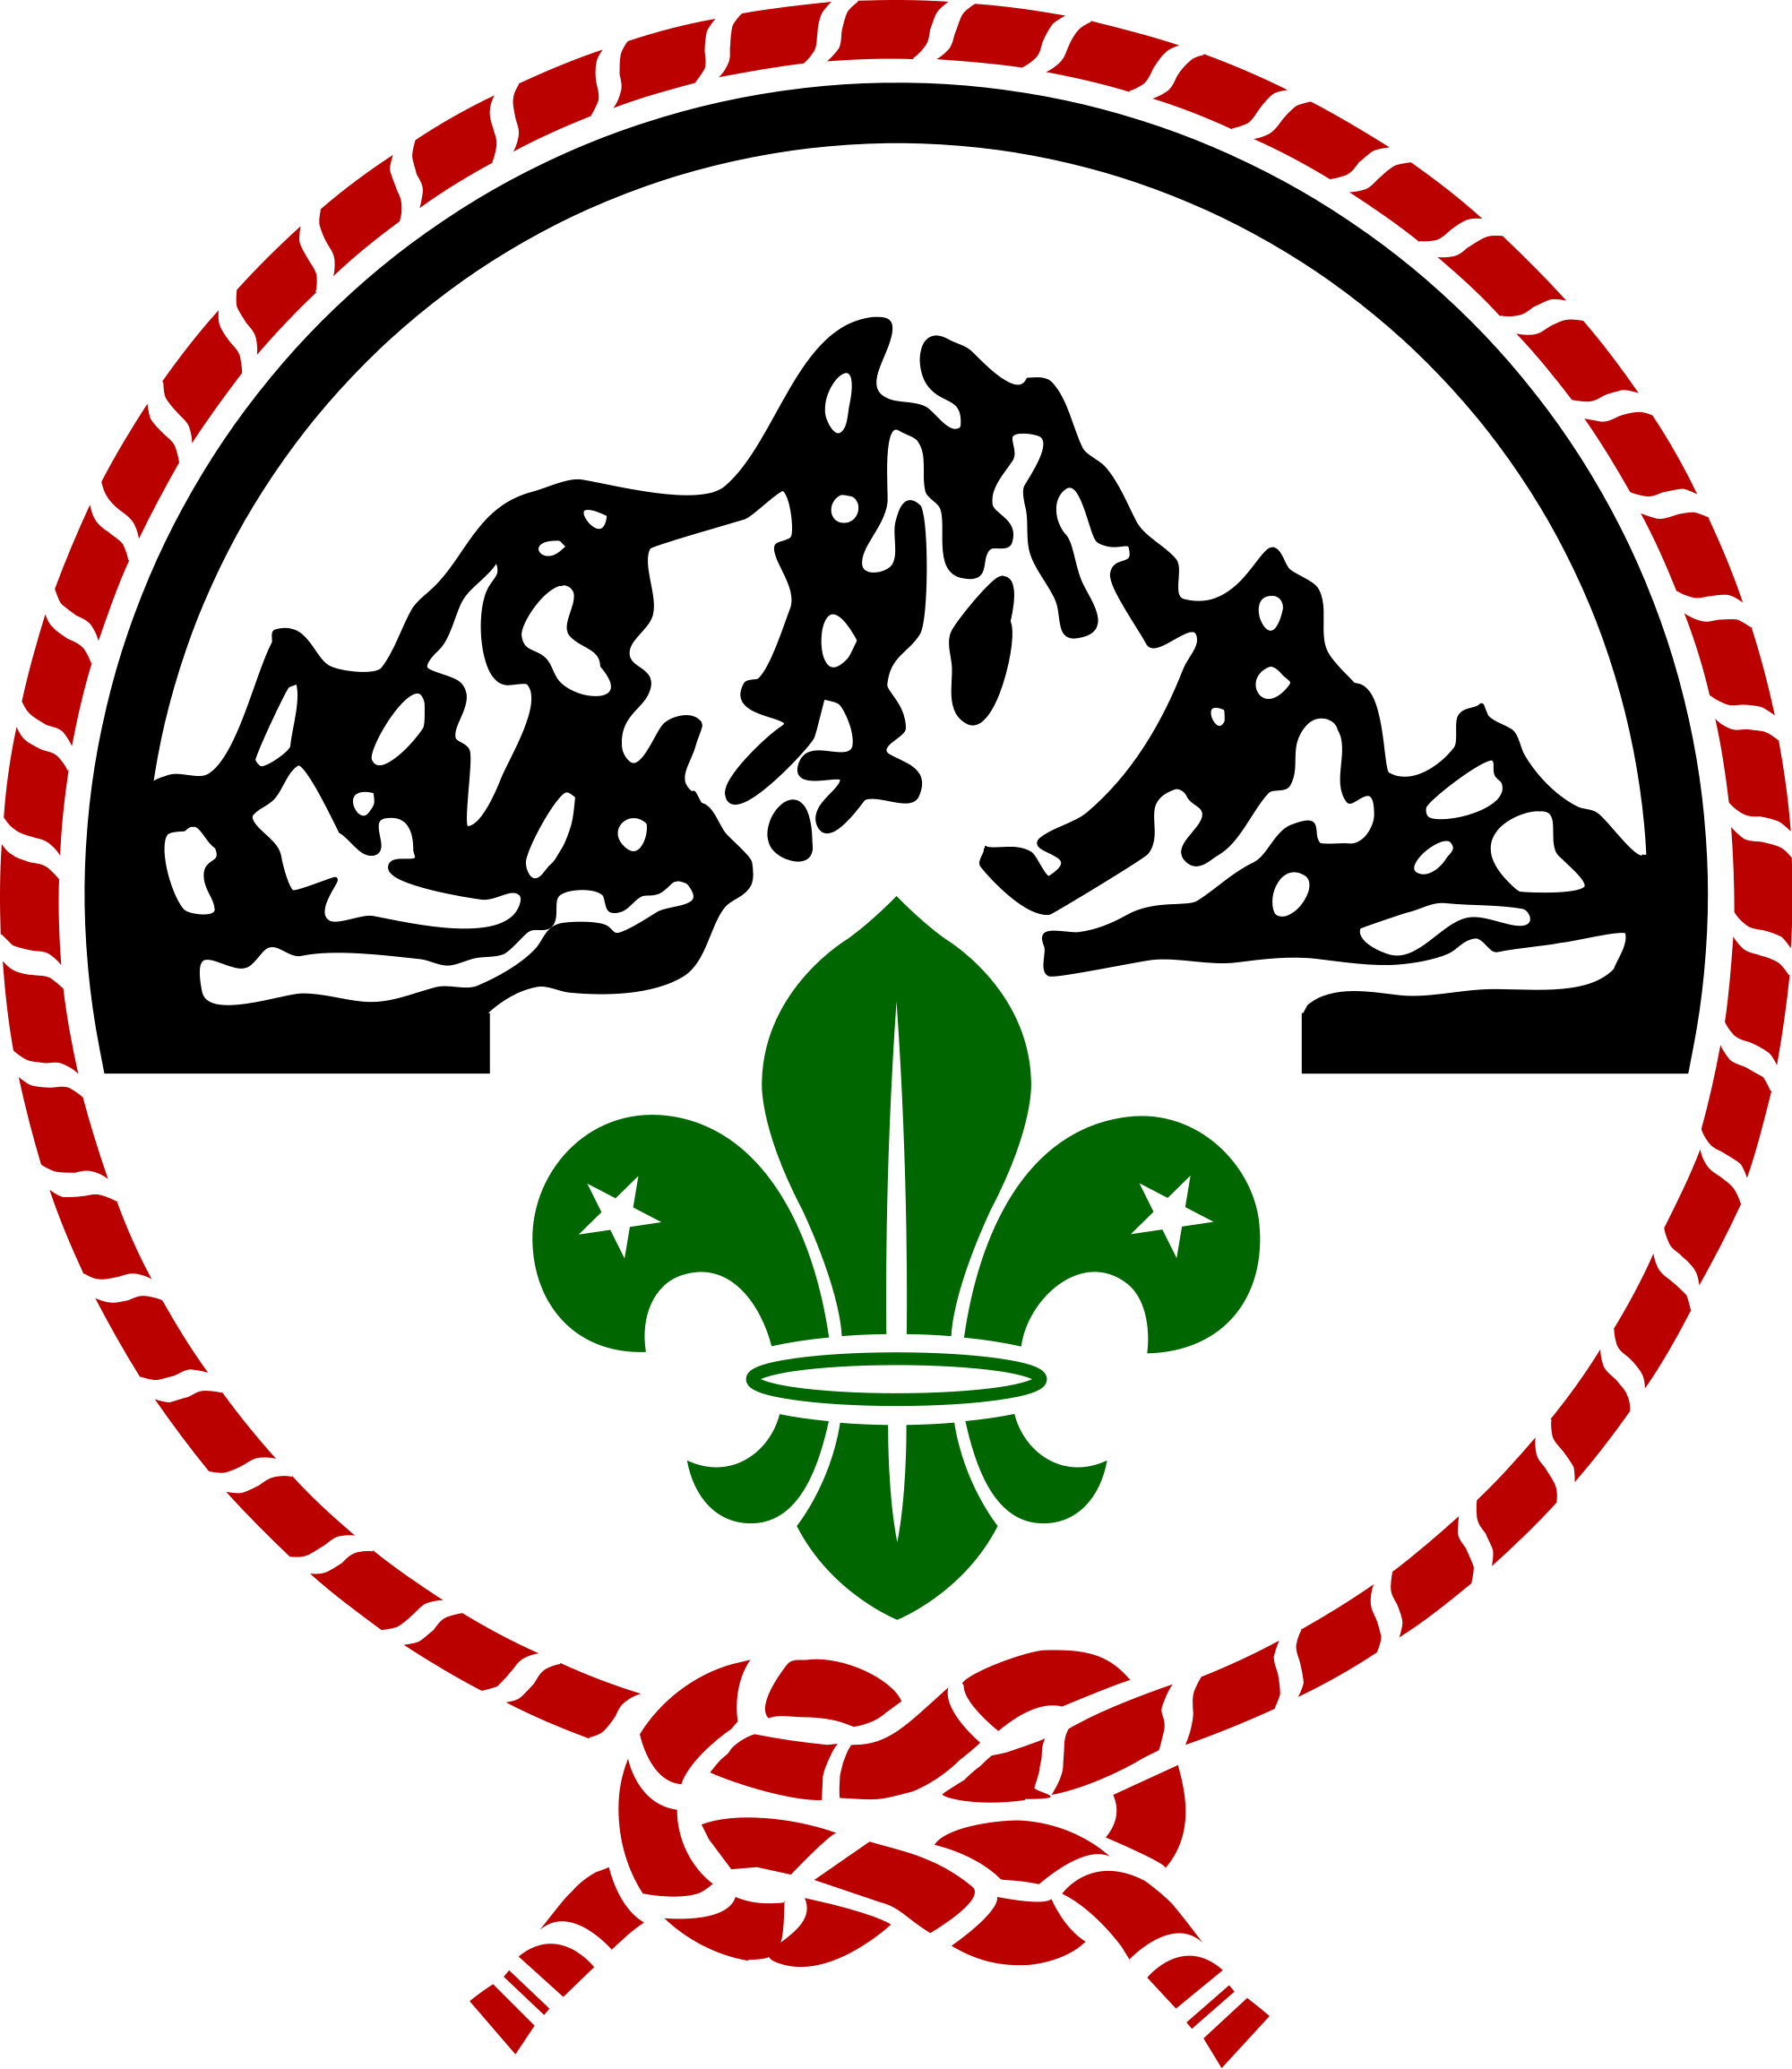 The Kenya Scouts Association Scout Uniform, Scouting, - Kenya Scouts Association Logo Clipart (2000x2309), Png Download